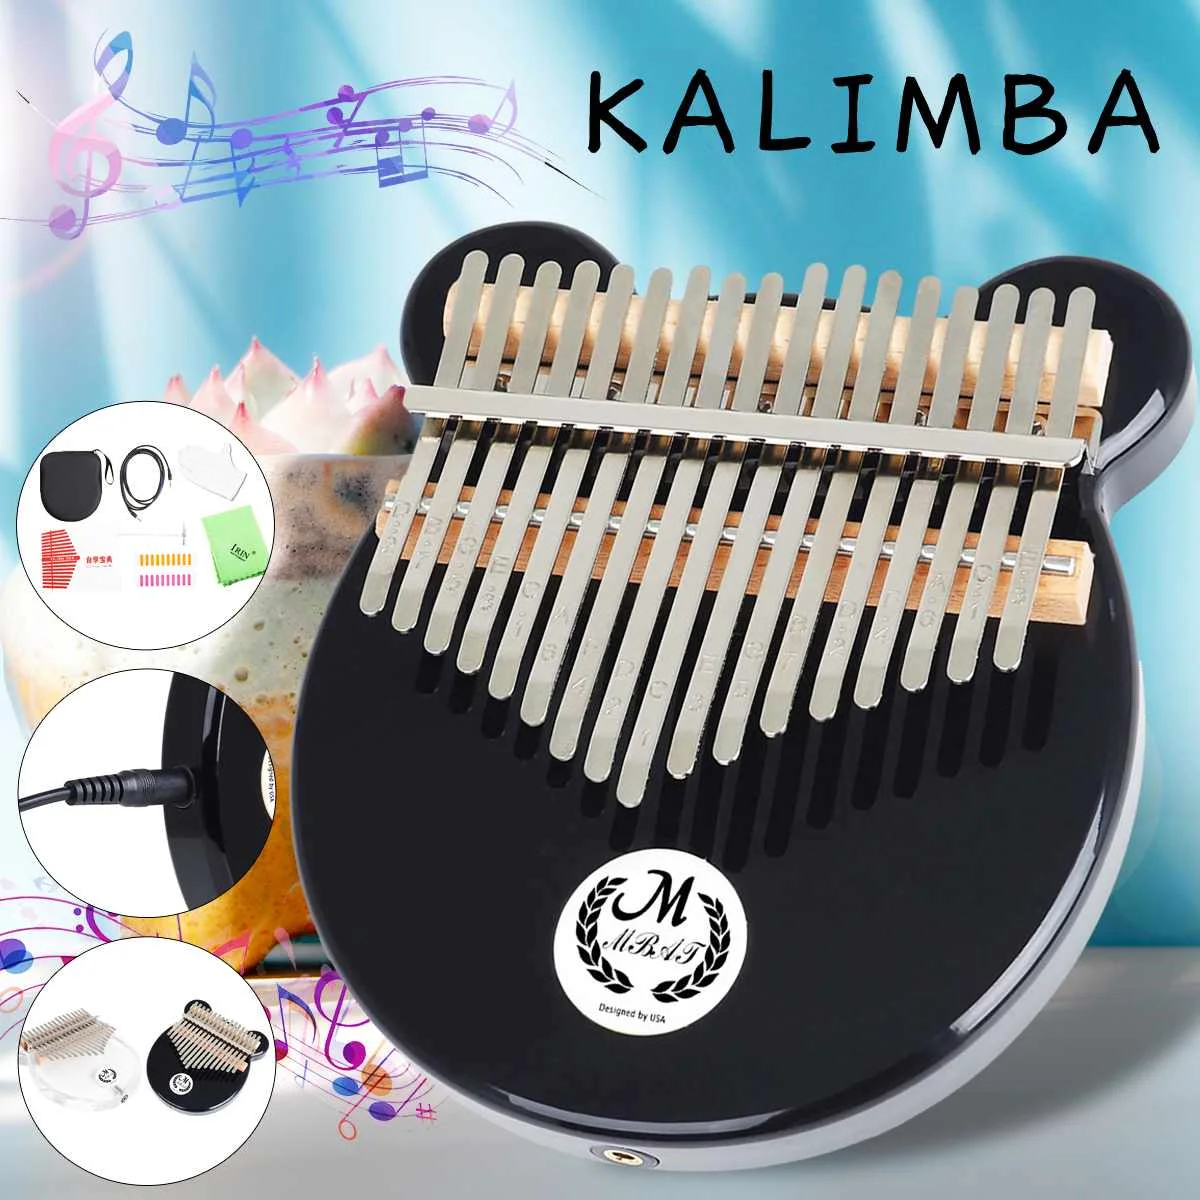 

Акриловое пианино Kalimba для большого пальца, 17 клавиш, прозрачное черное пианино для пальцев с EQ, высококачественный музыкальный инструмент, ...